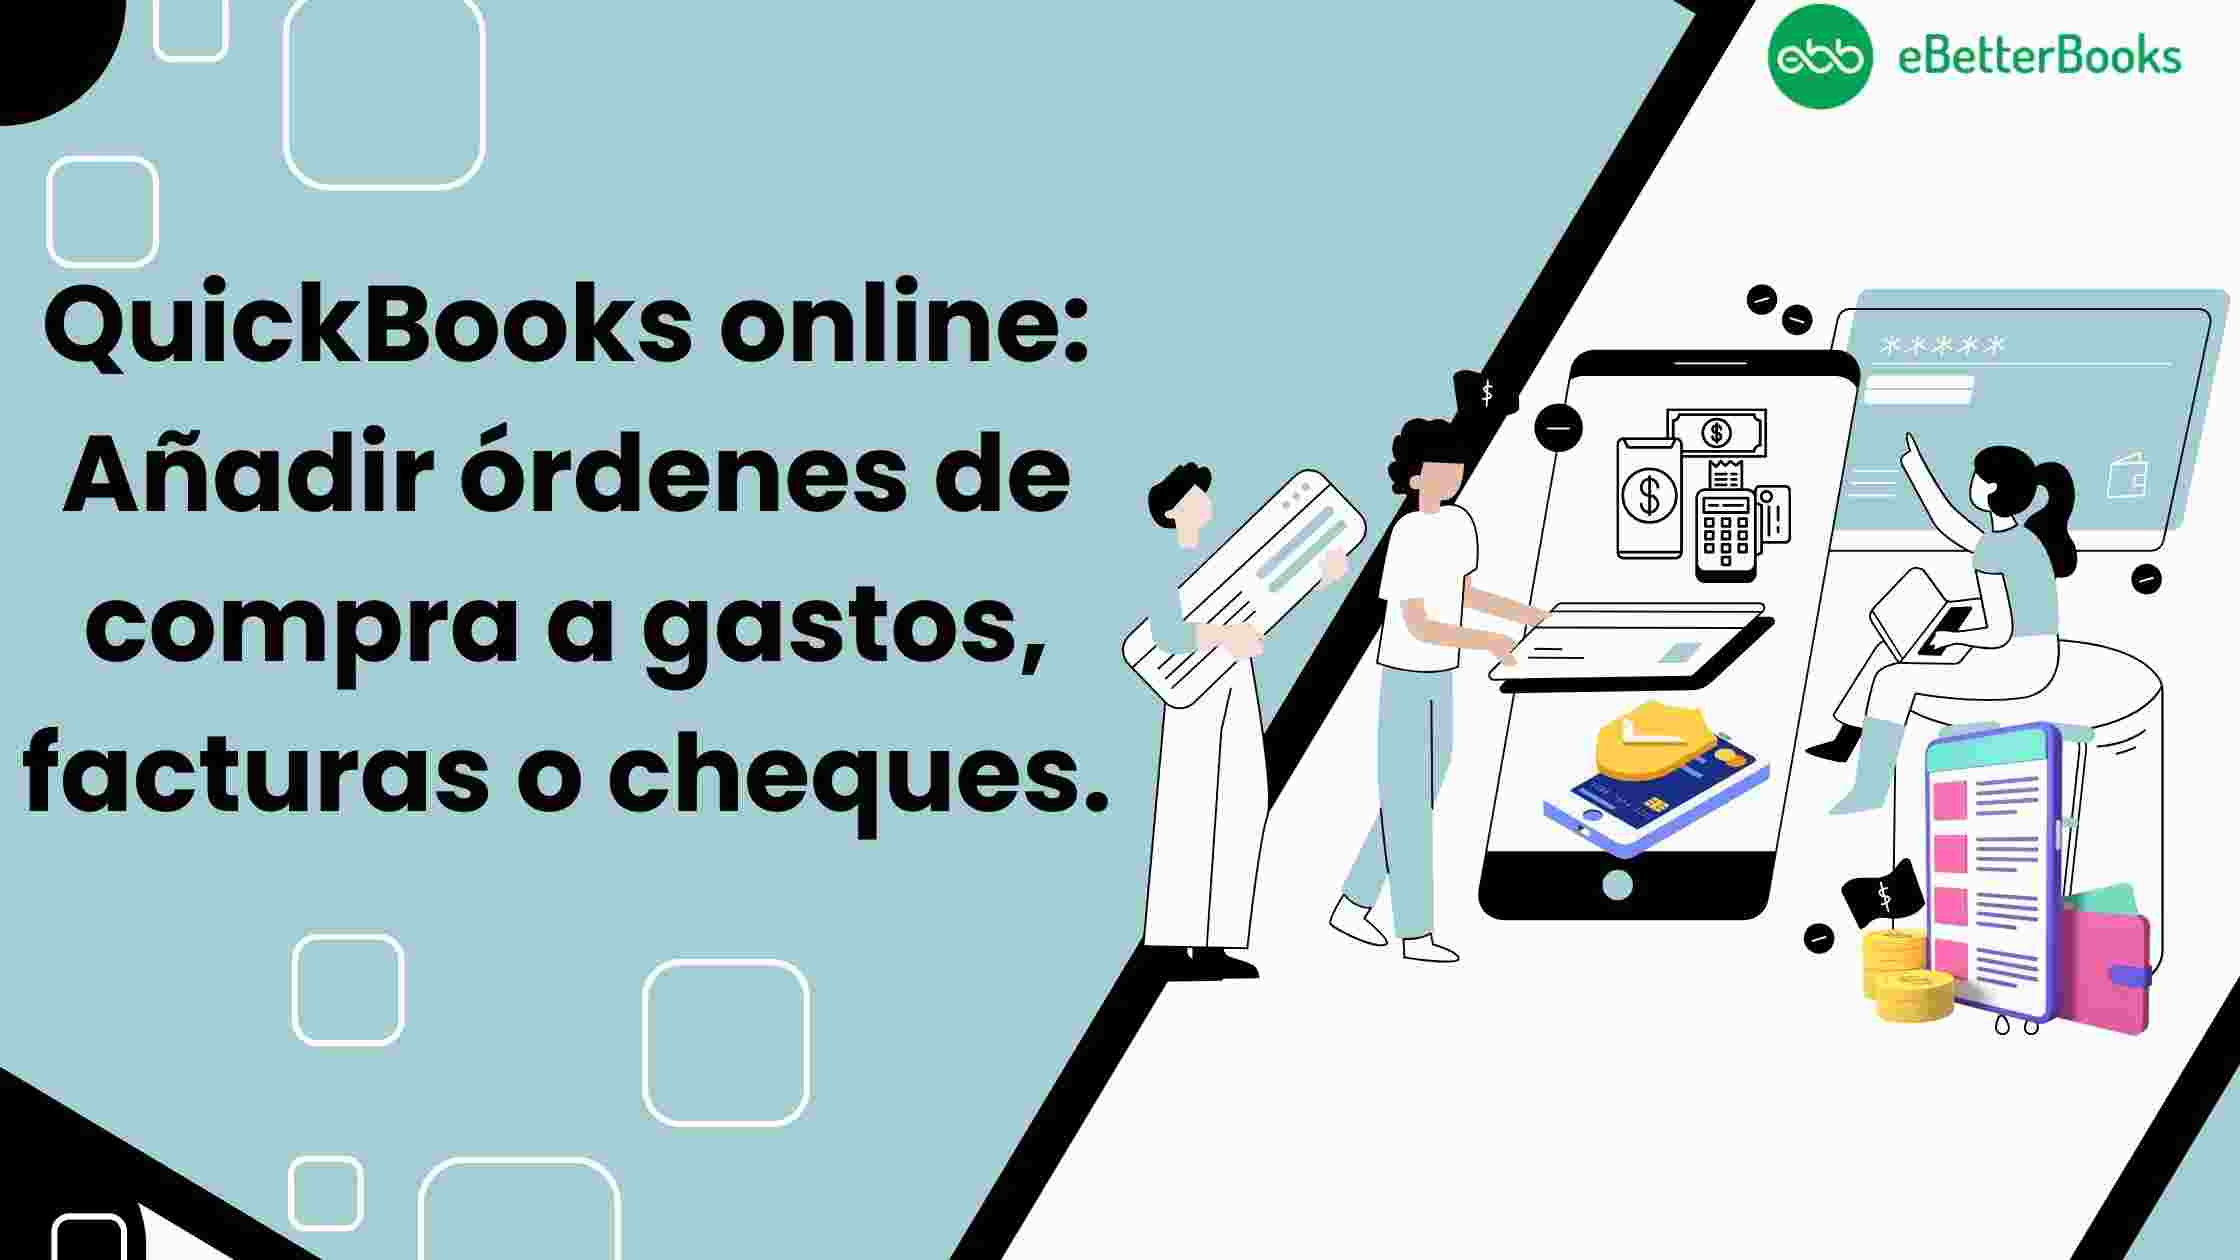 QuickBooks online: Añadir órdenes de compra a gastos, facturas o cheques. 